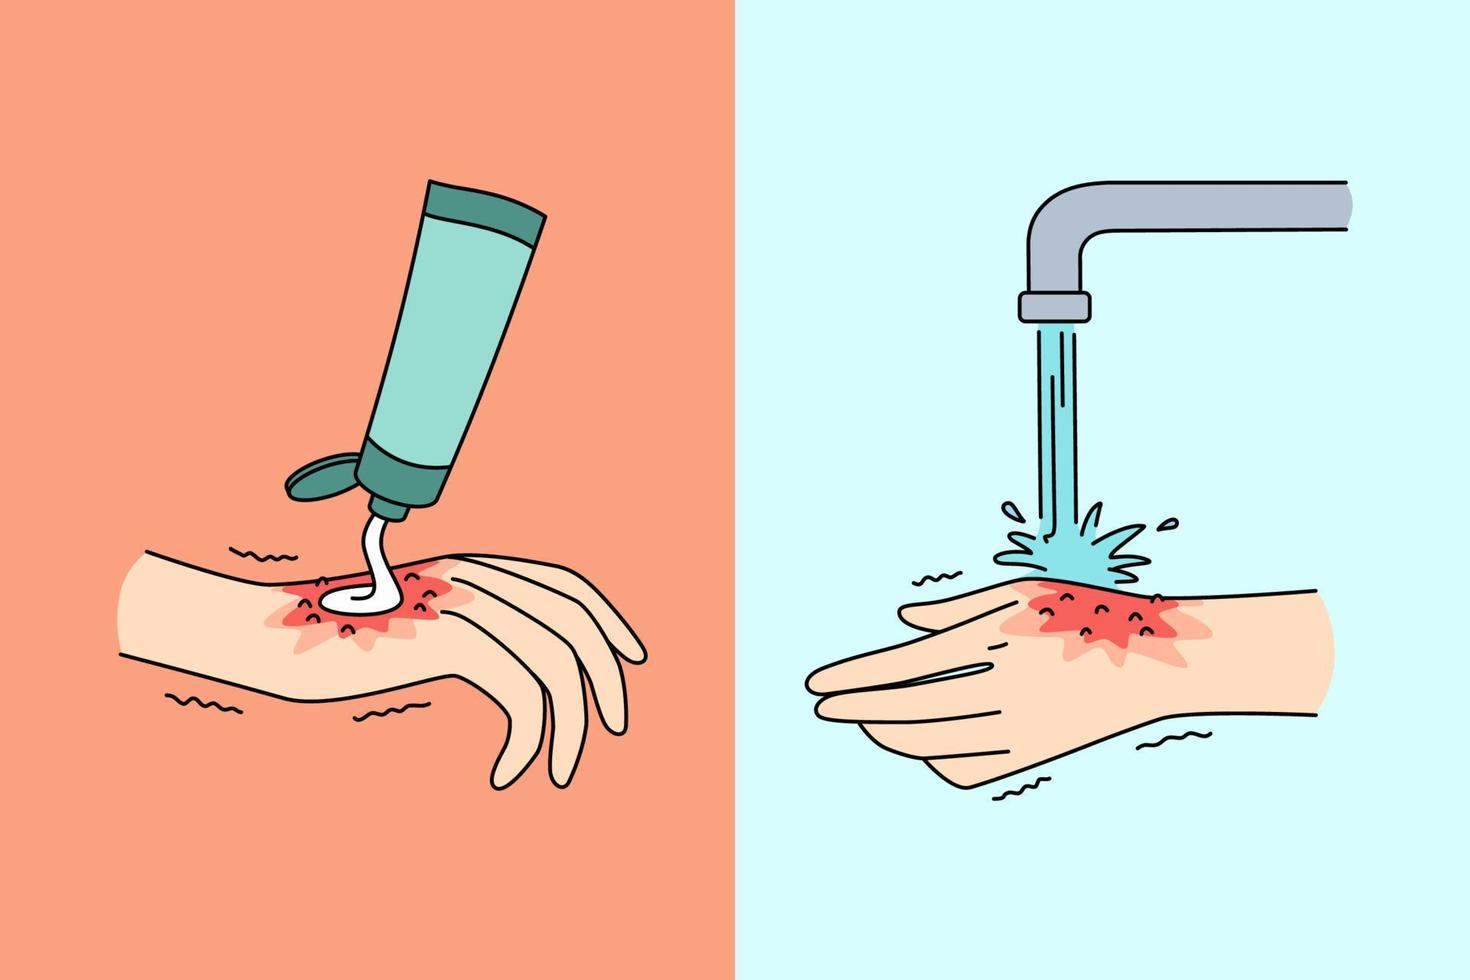 conceito de higiene e limpeza das mãos. mão humana aplicando creme e lavando com água da limpeza da torneira, economizando a higiene diária e curando a ilustração do vetor de lesões